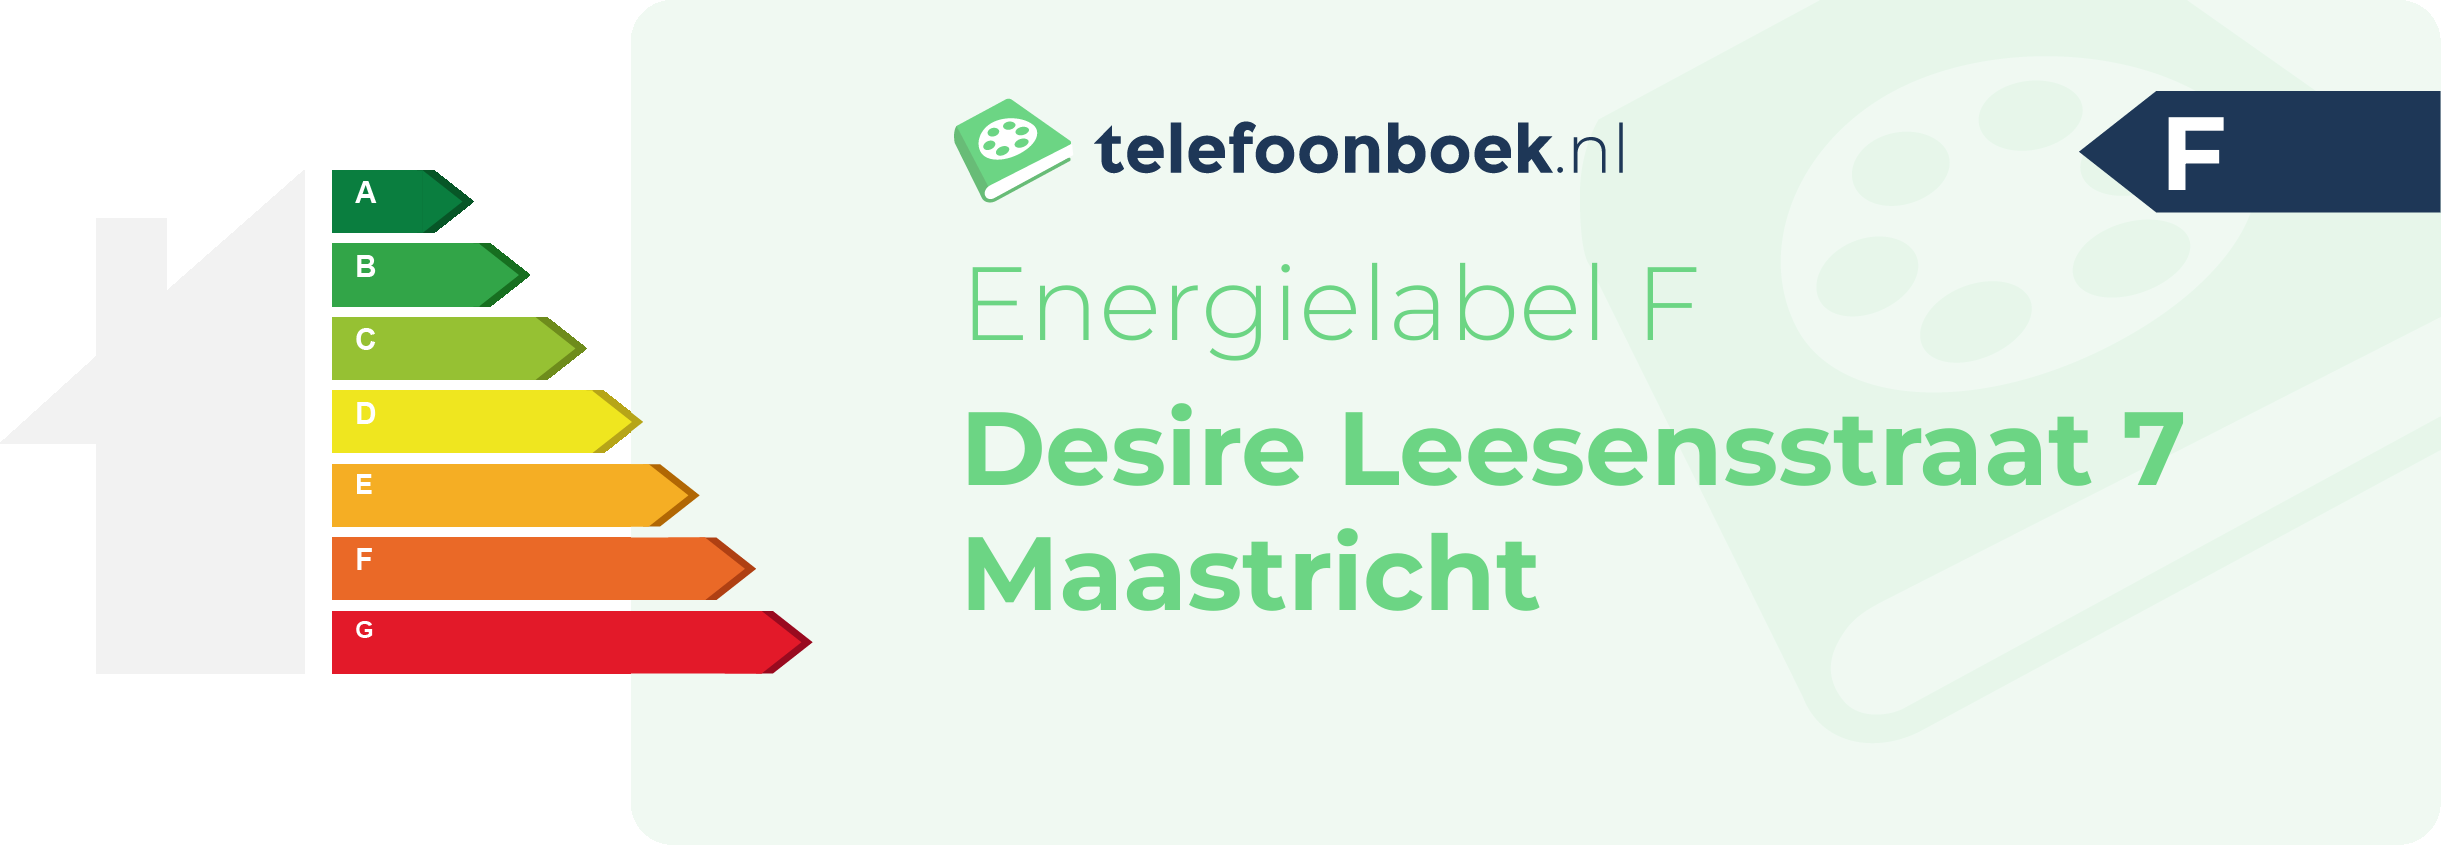 Energielabel Desire Leesensstraat 7 Maastricht